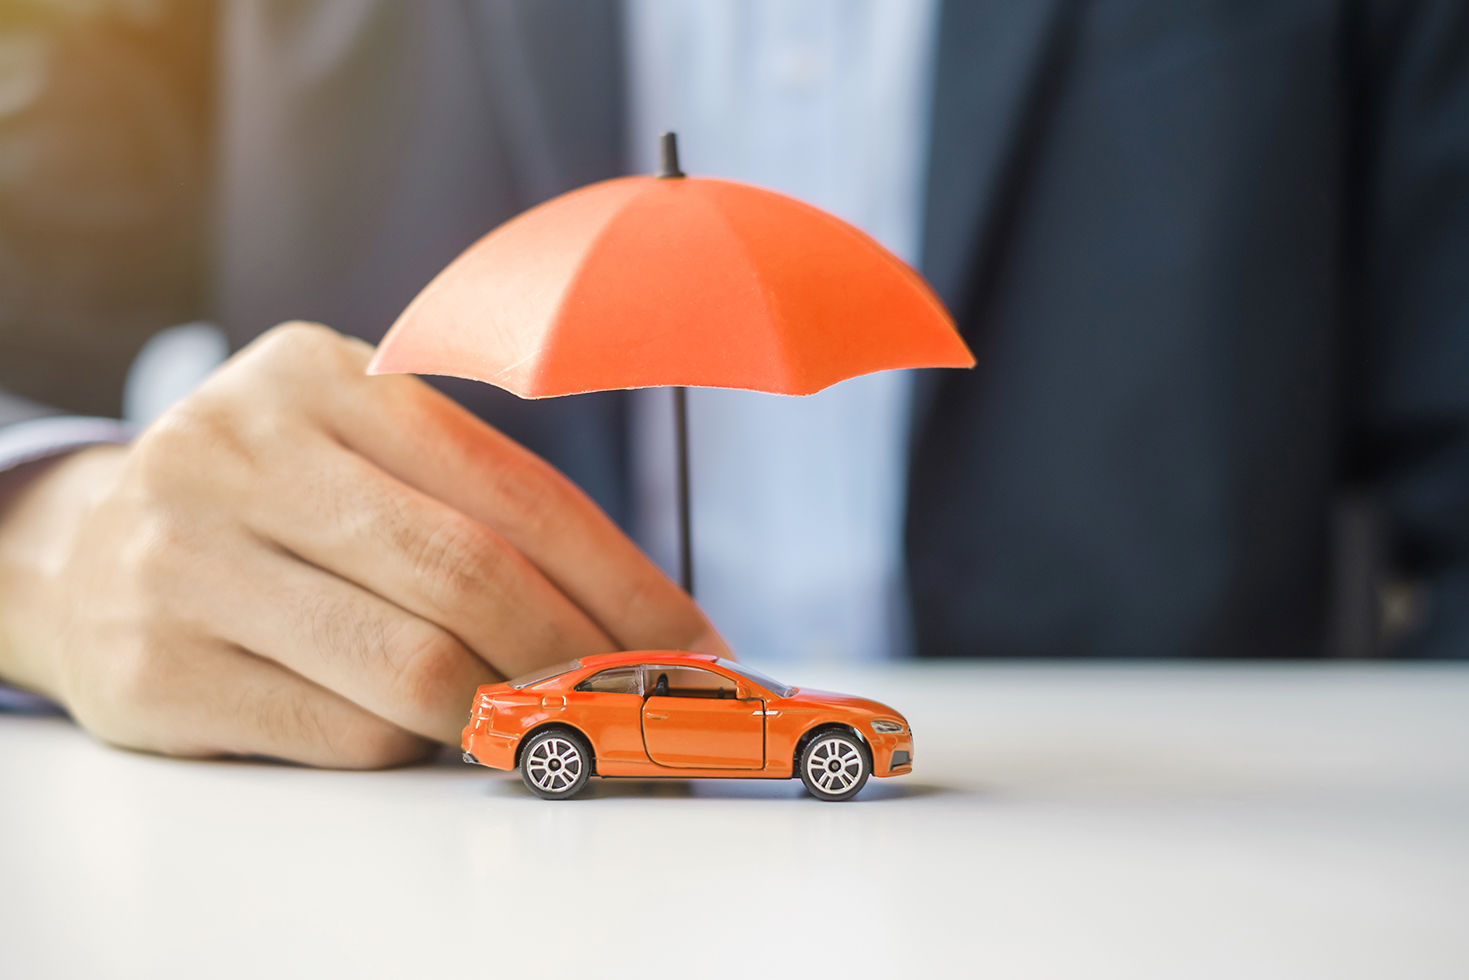 courtier d'assurance tenant parapluie orange au-dessus d'un jouet voiture orange